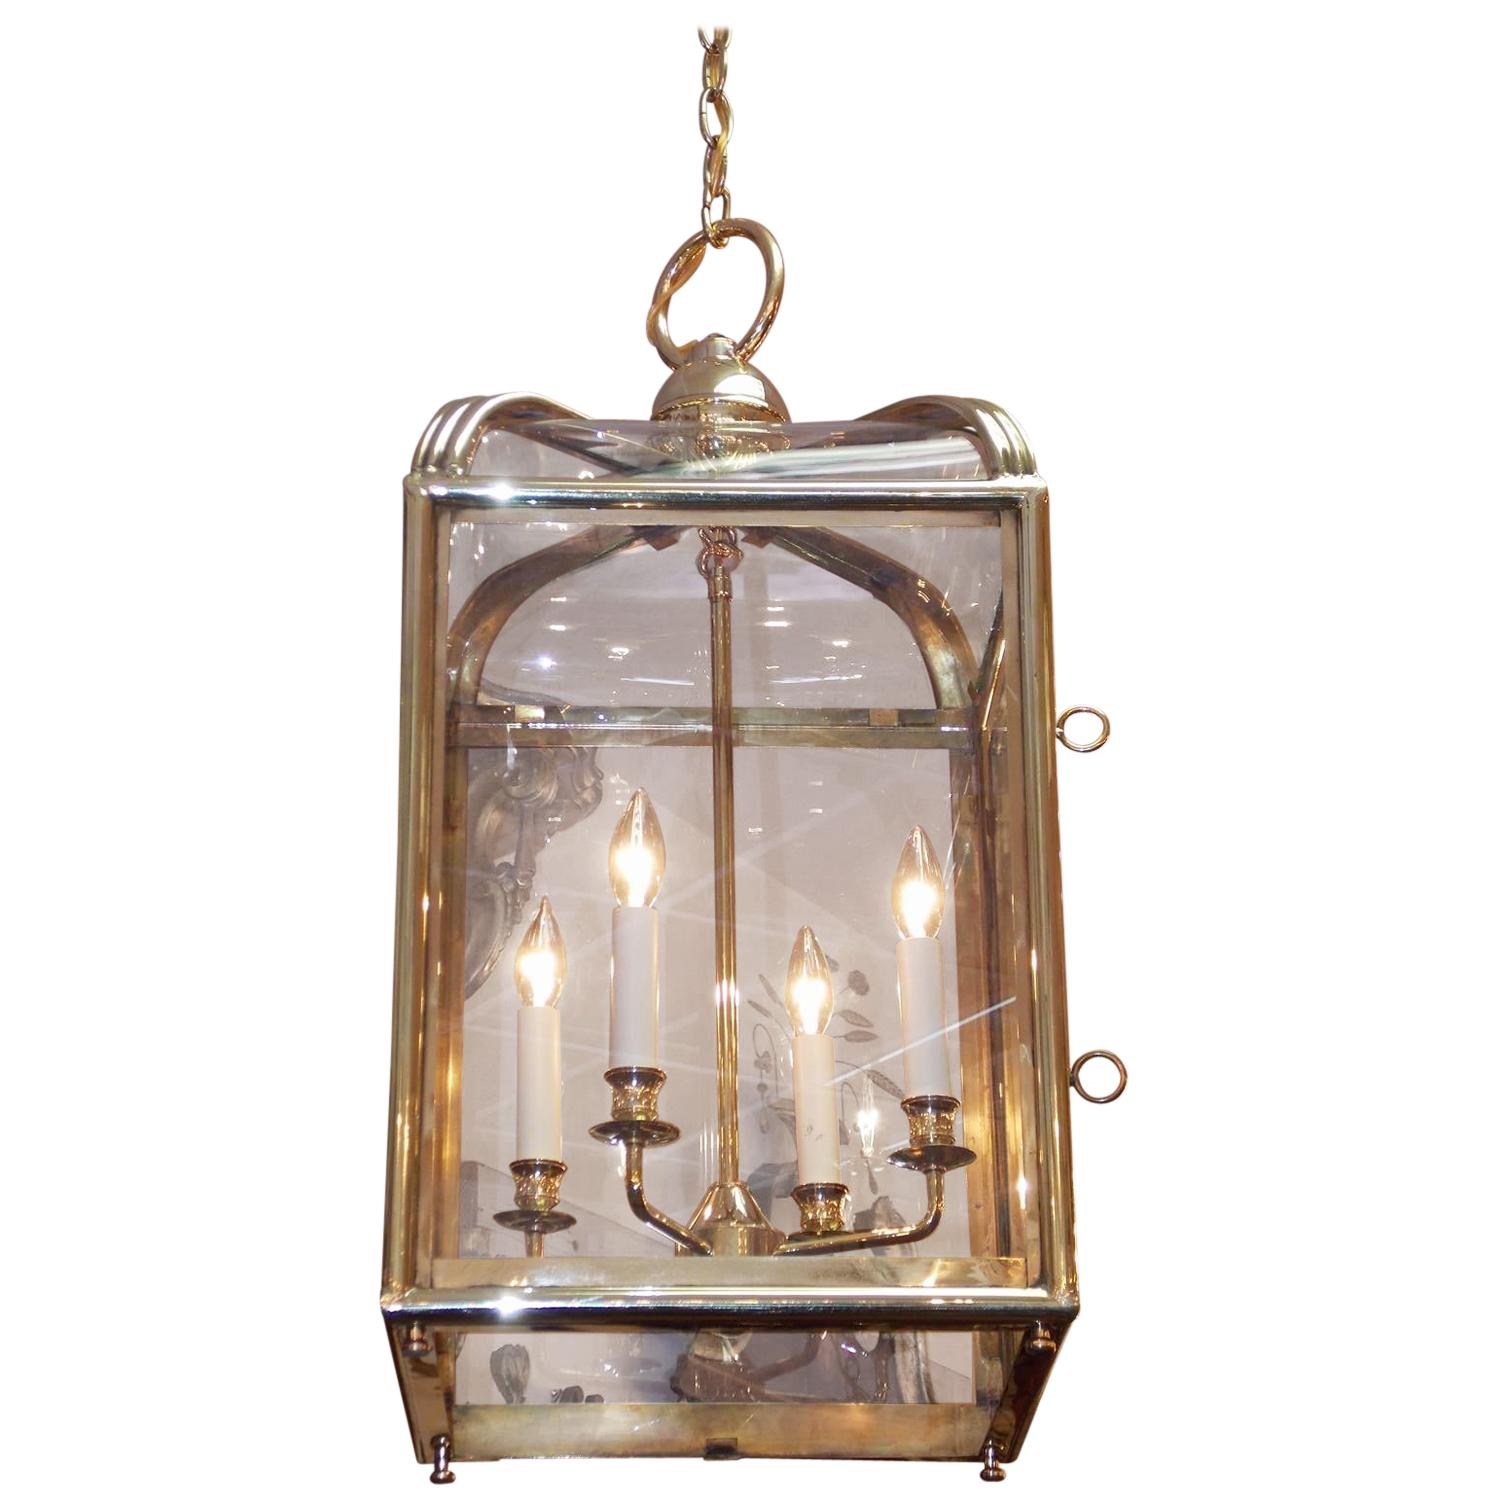 Lanterne suspendue à dôme en laiton américain avec grappe de lumières intérieure, datant d'environ 1870